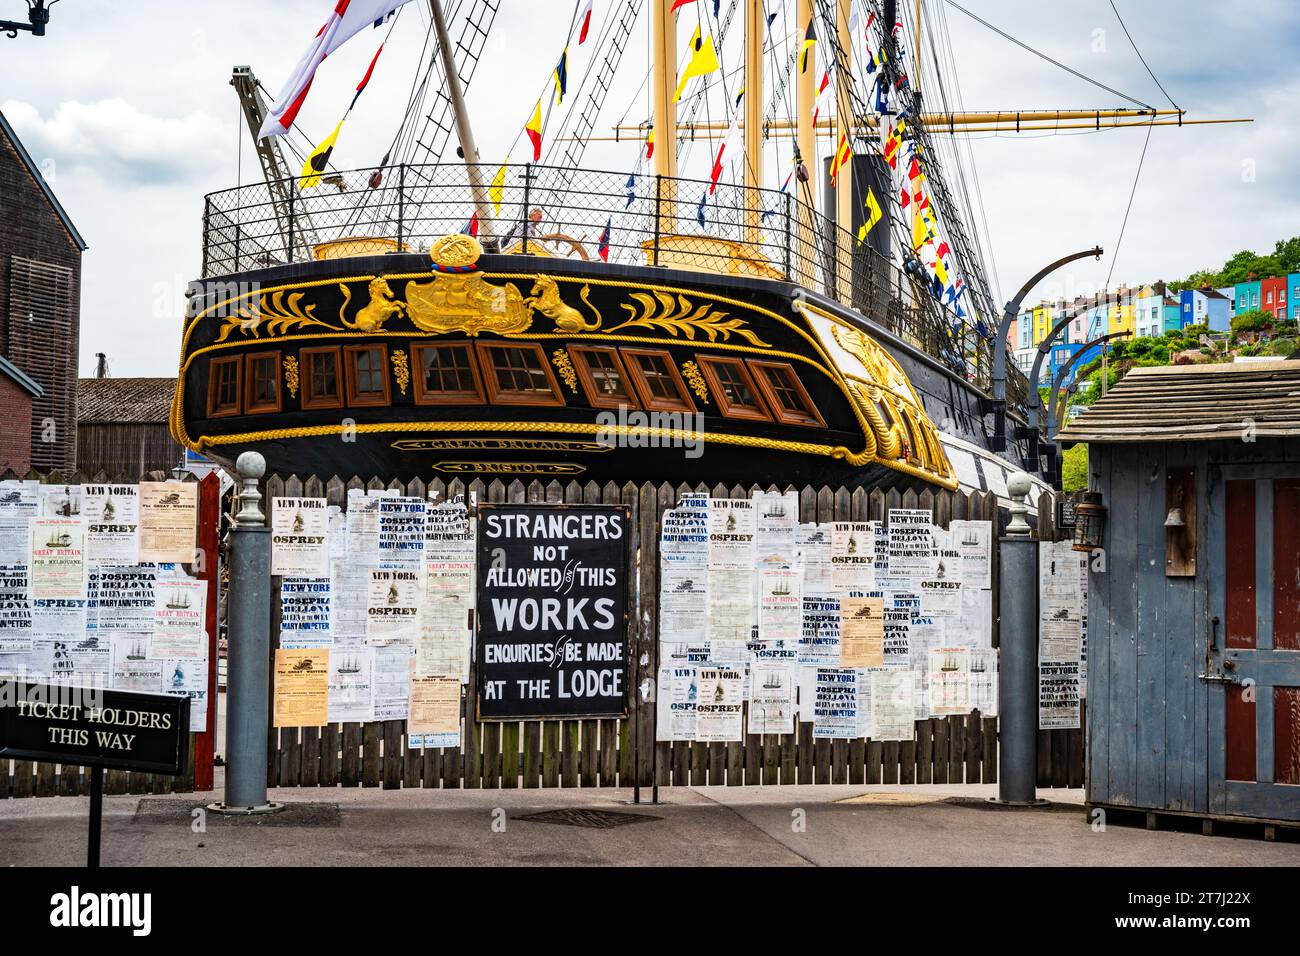 La poppa della nave di ferro di Brunel, SS Great Britain, una nave museo, in bacino di carenaggio presso il Great Western Dockyard, Bristol, Inghilterra, Regno Unito Foto Stock